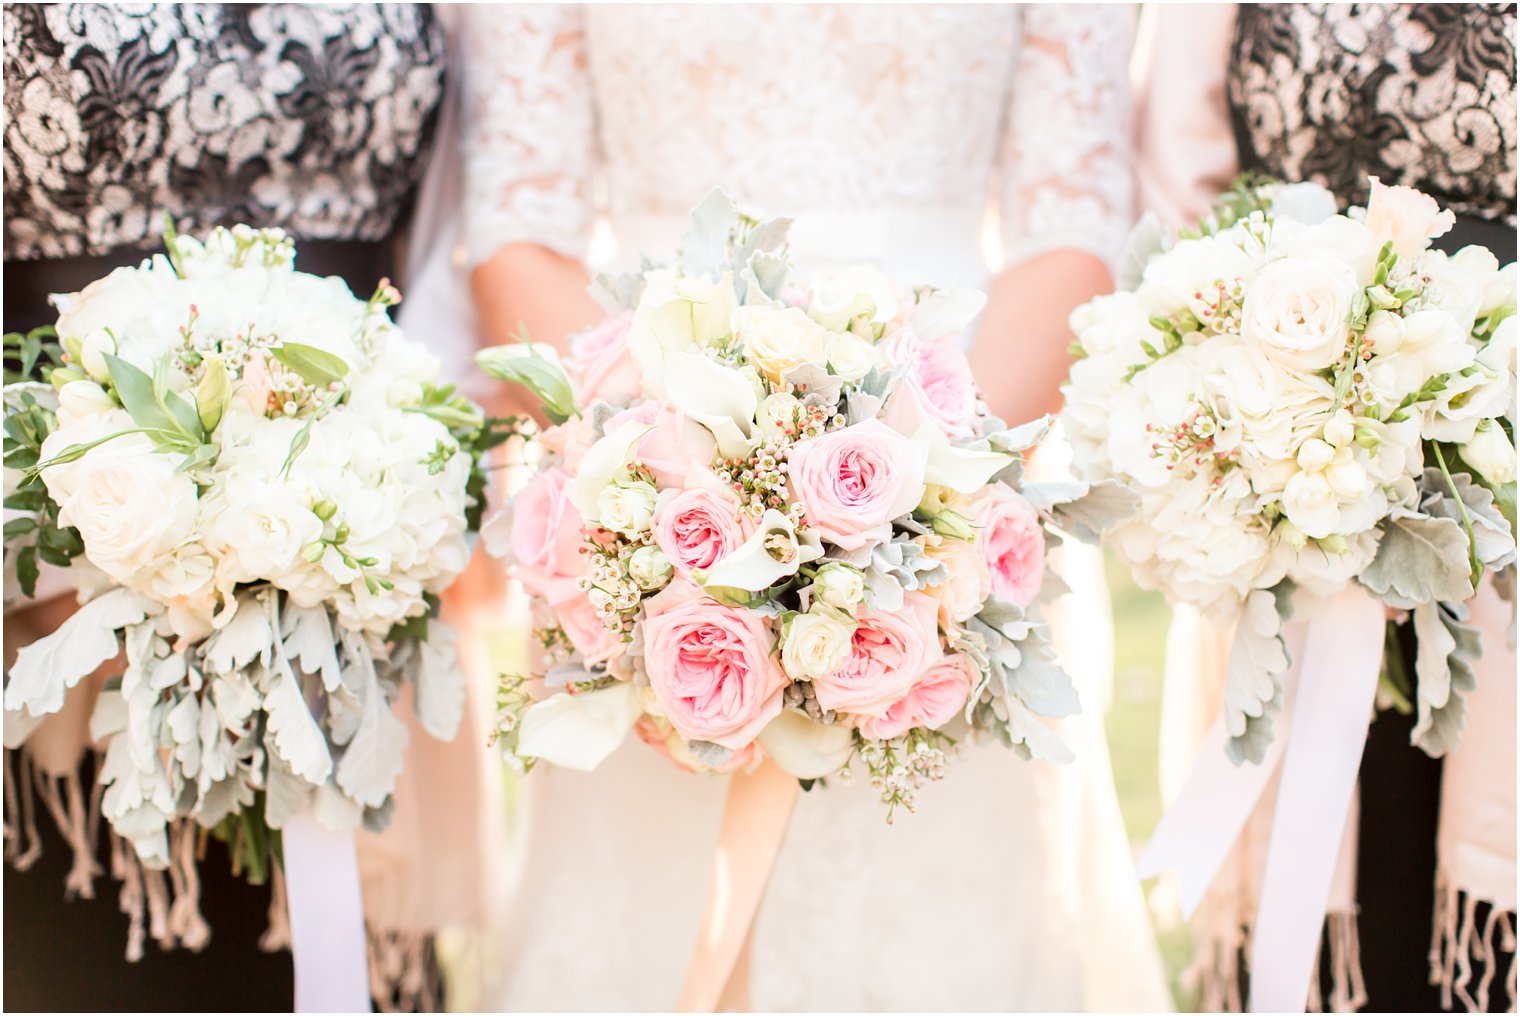 Organic bouquets by Bogath Weddings | Photo by Idalia Photography